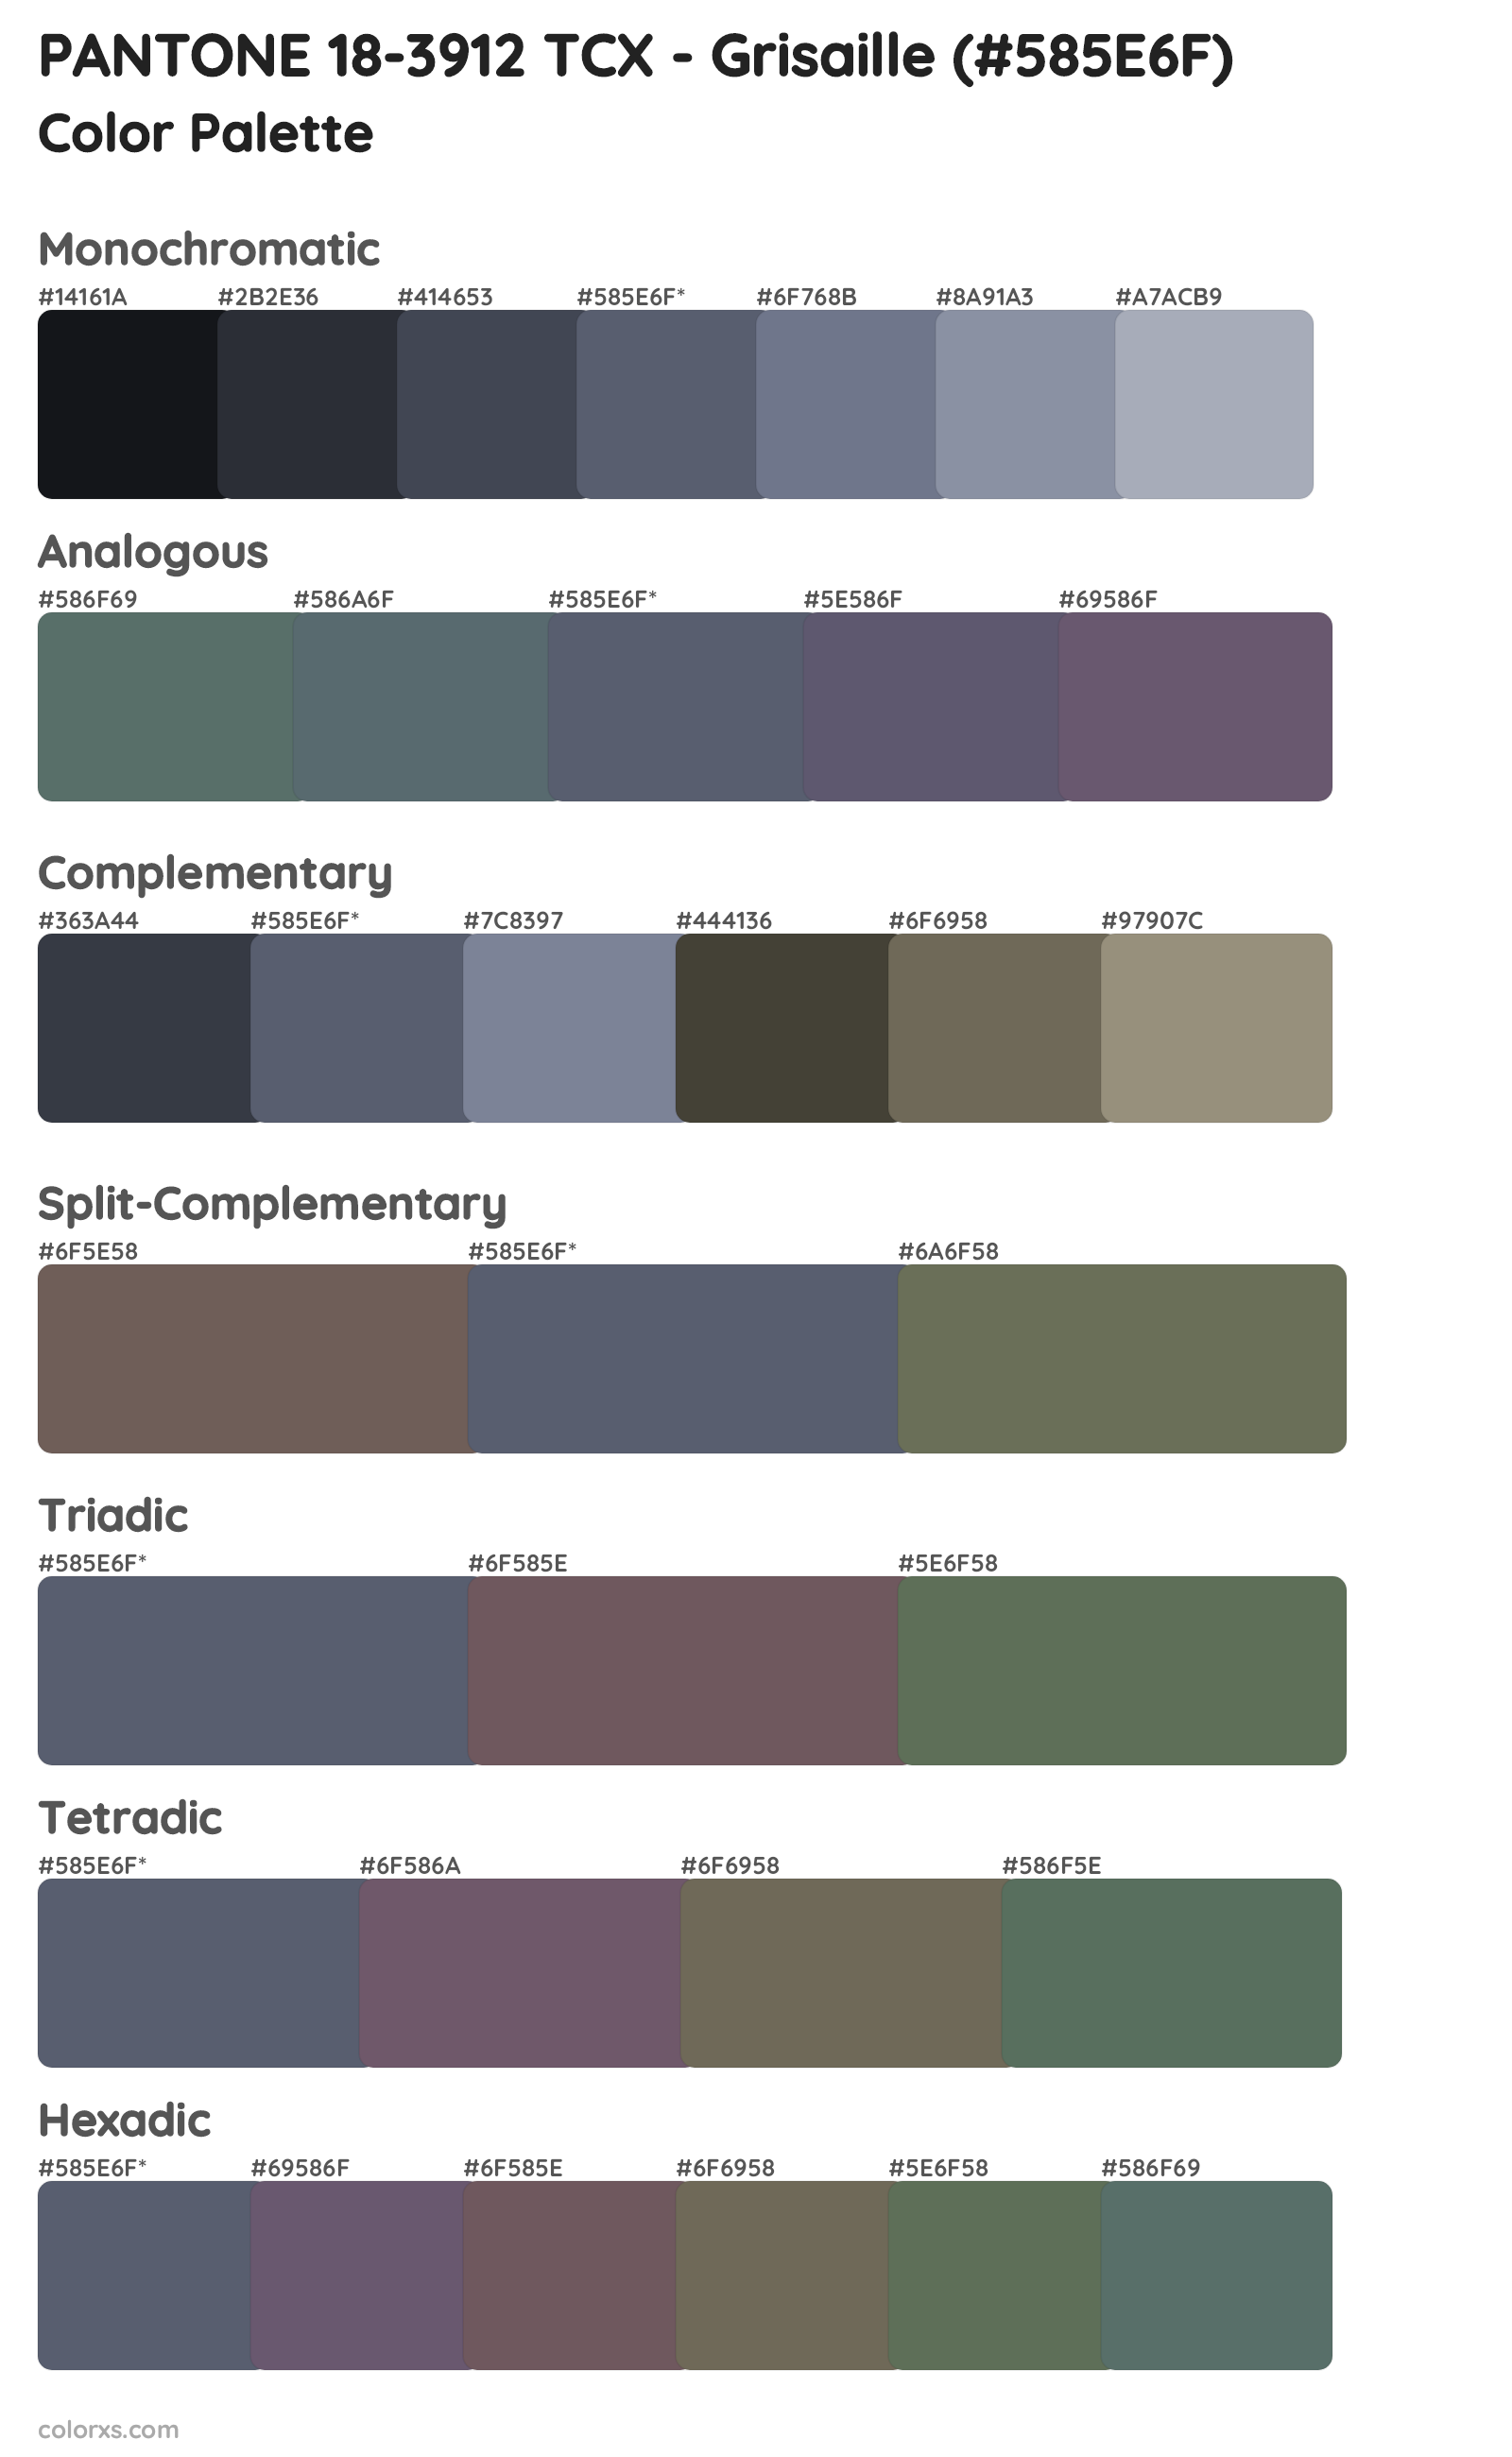 PANTONE 18-3912 TCX - Grisaille Color Scheme Palettes